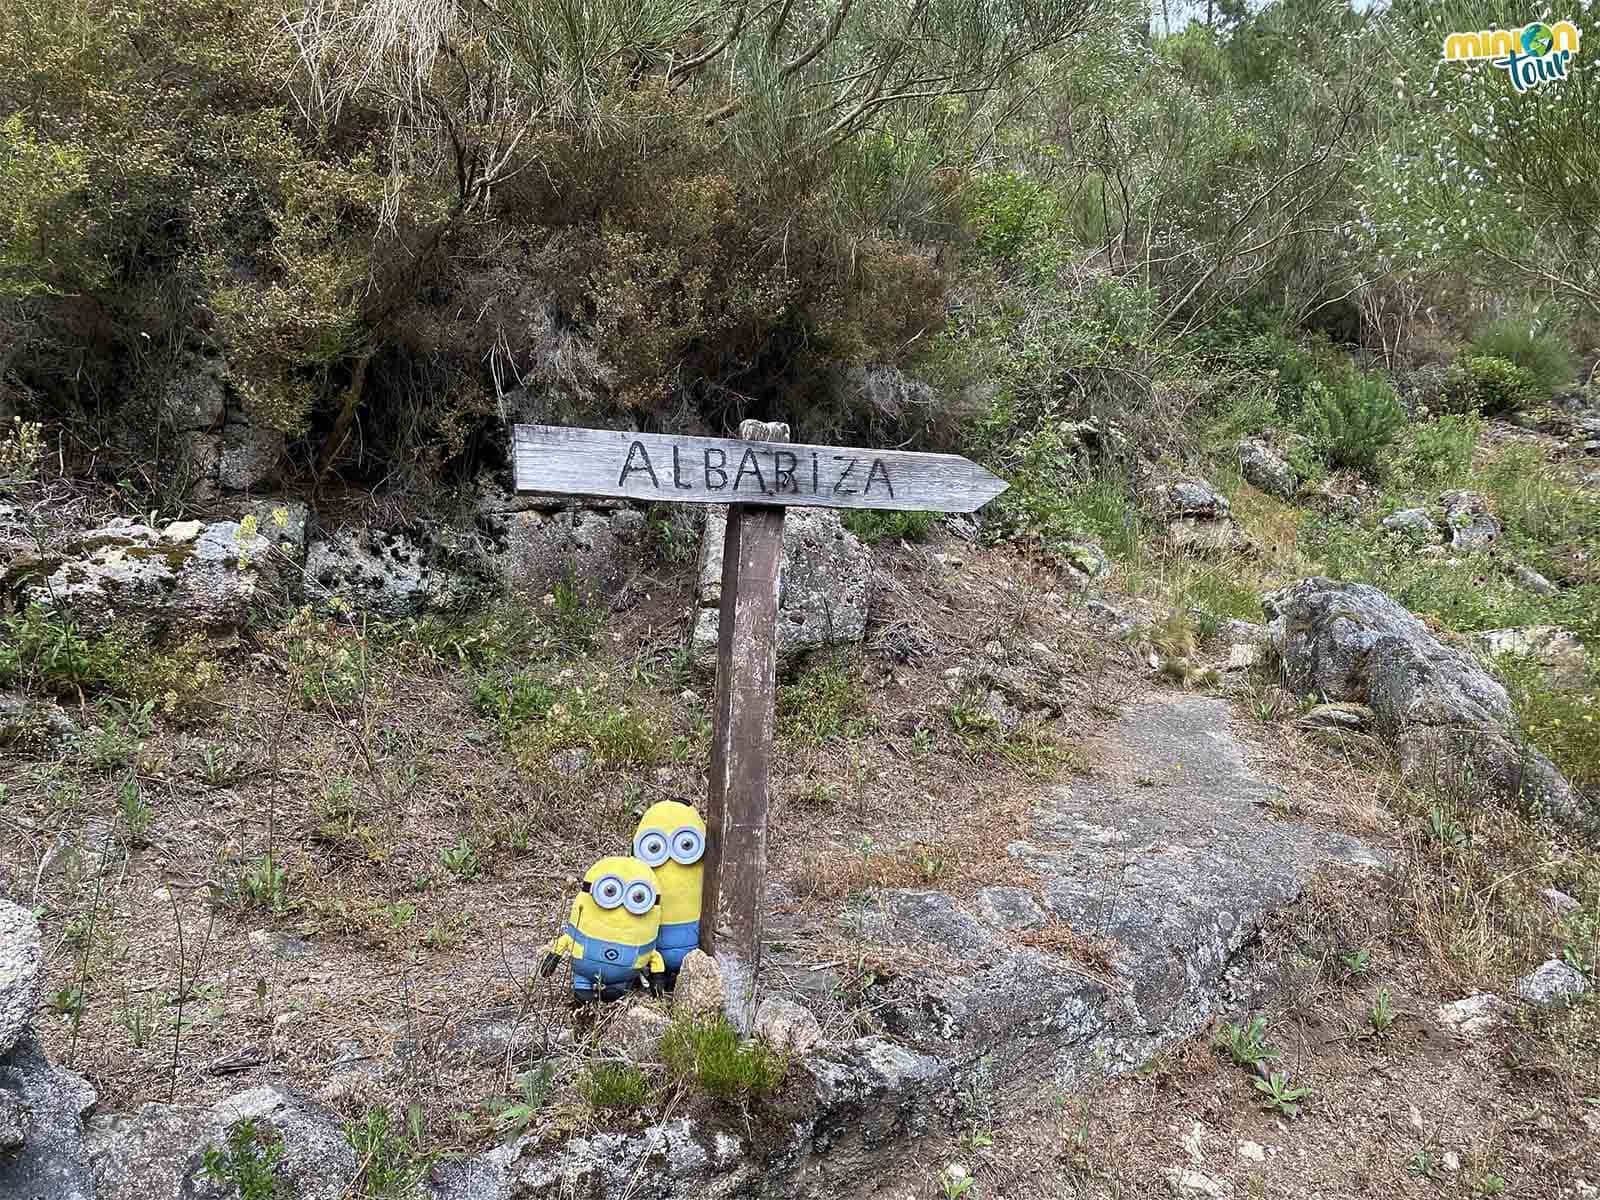 Esta es la señal que te dice por donde se va a la Albariza de Vilameá